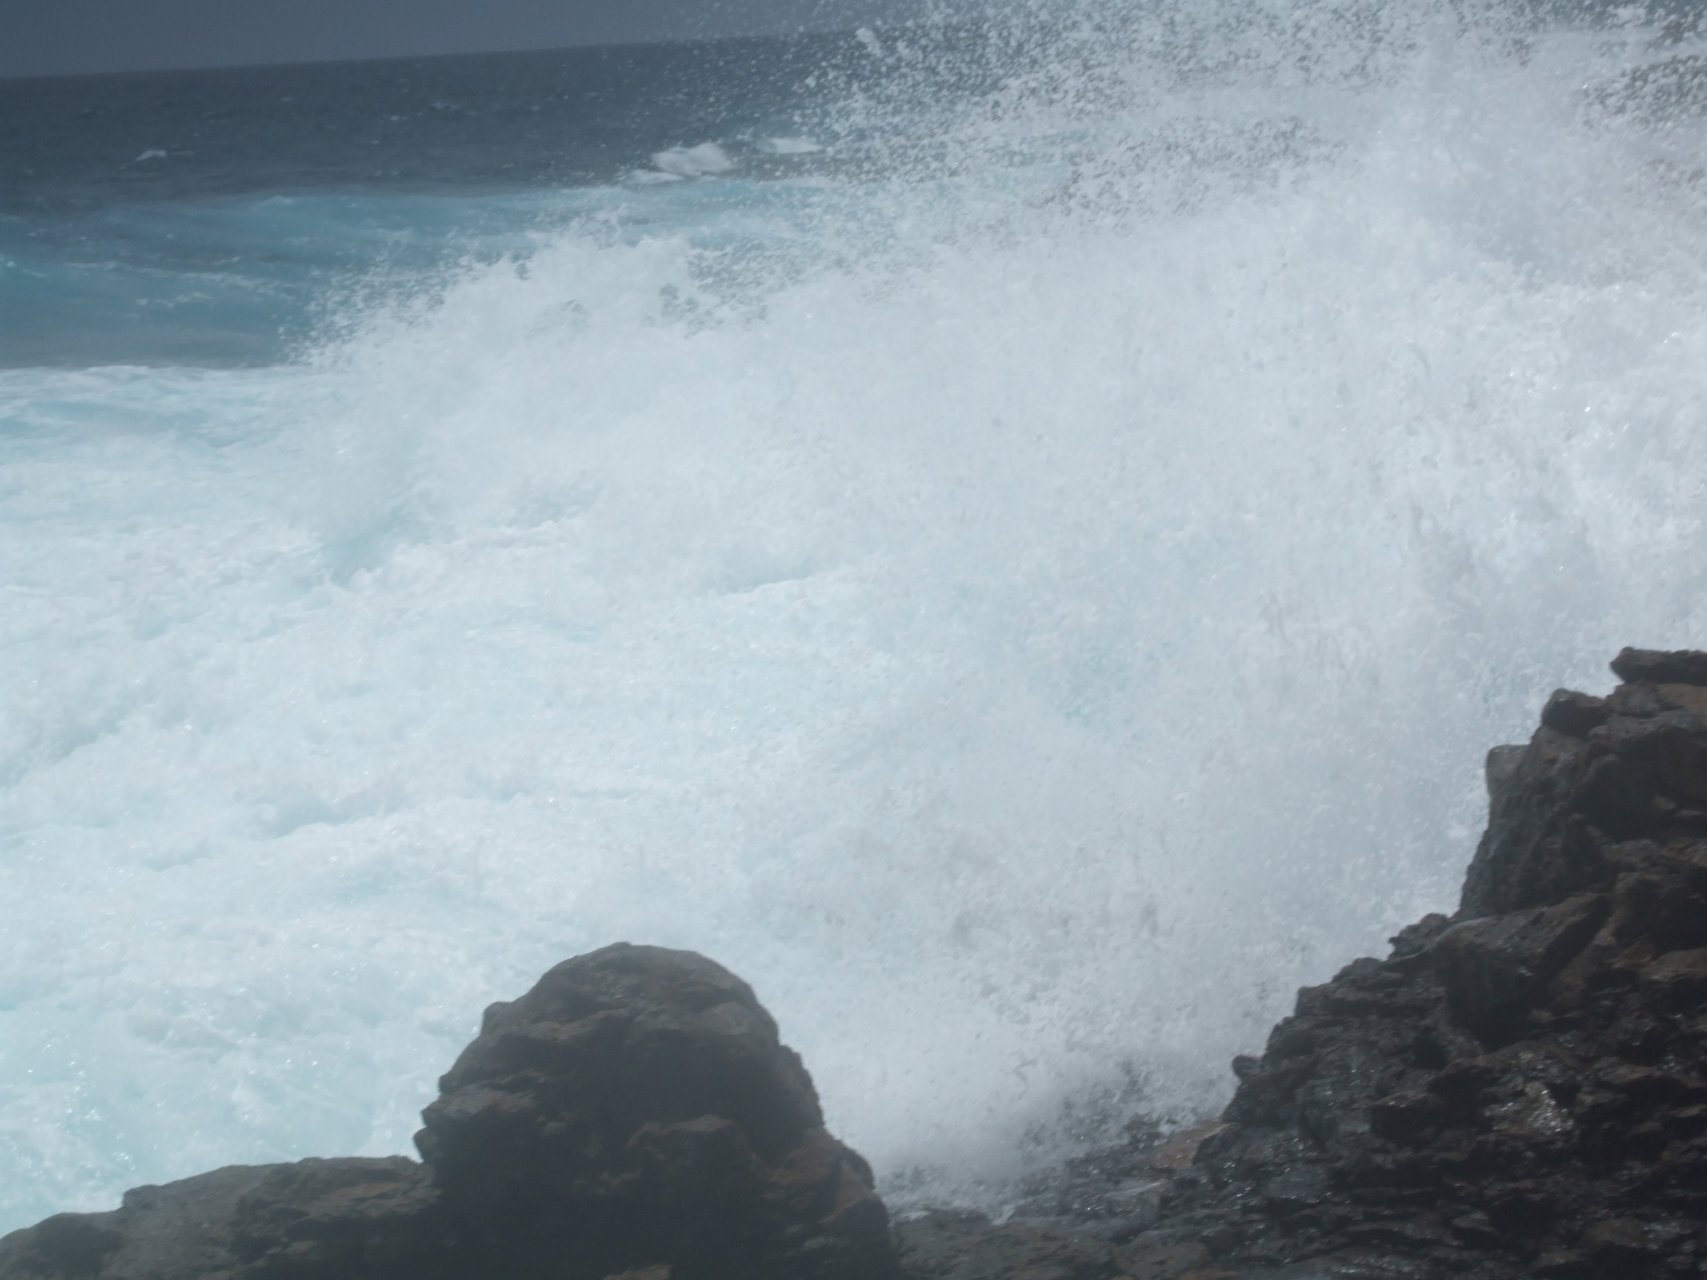 Wzburzony ocean u wybrzeży Costa Caleta